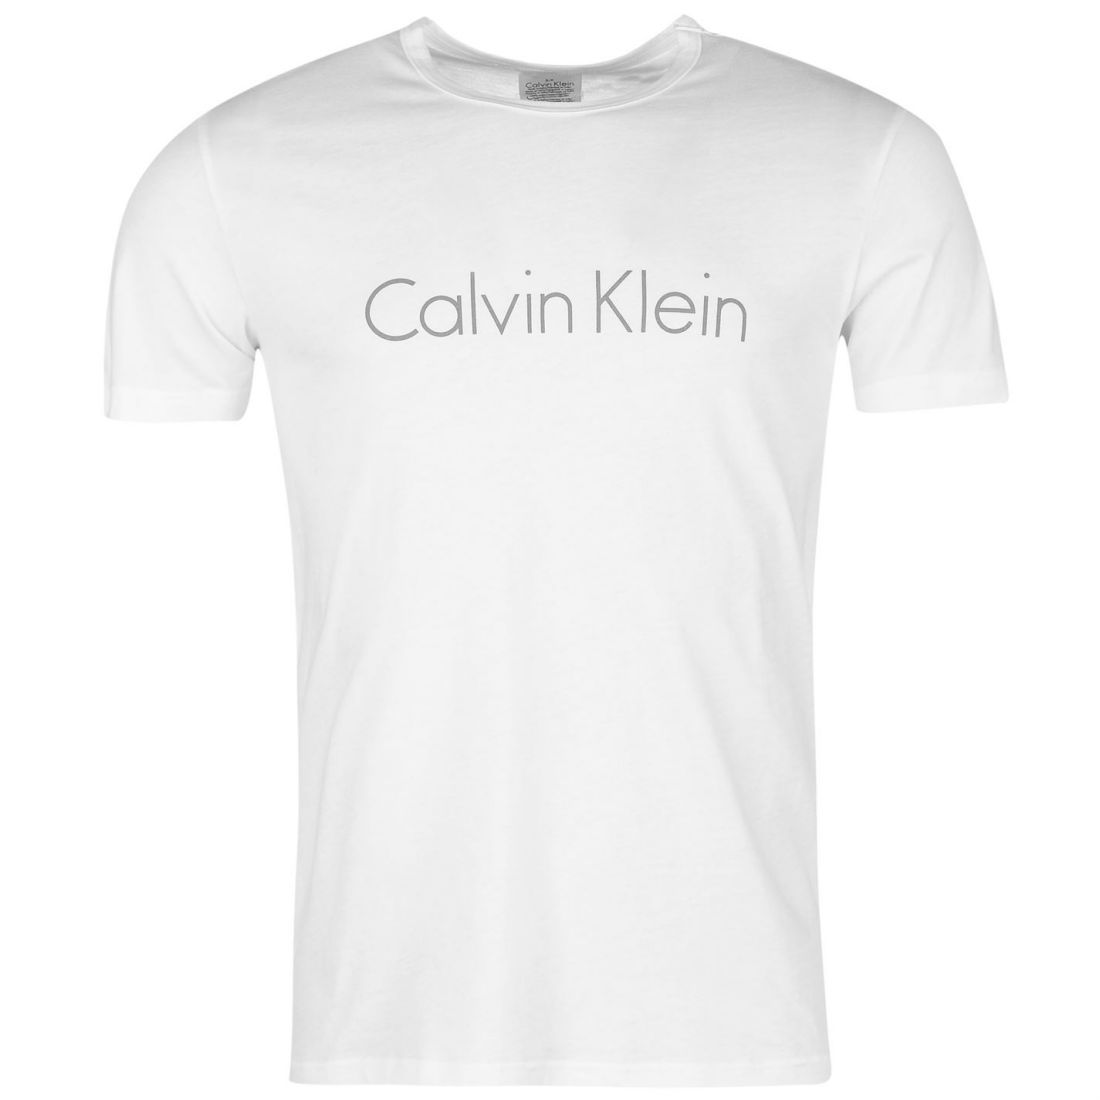 calvin klein mens shirt